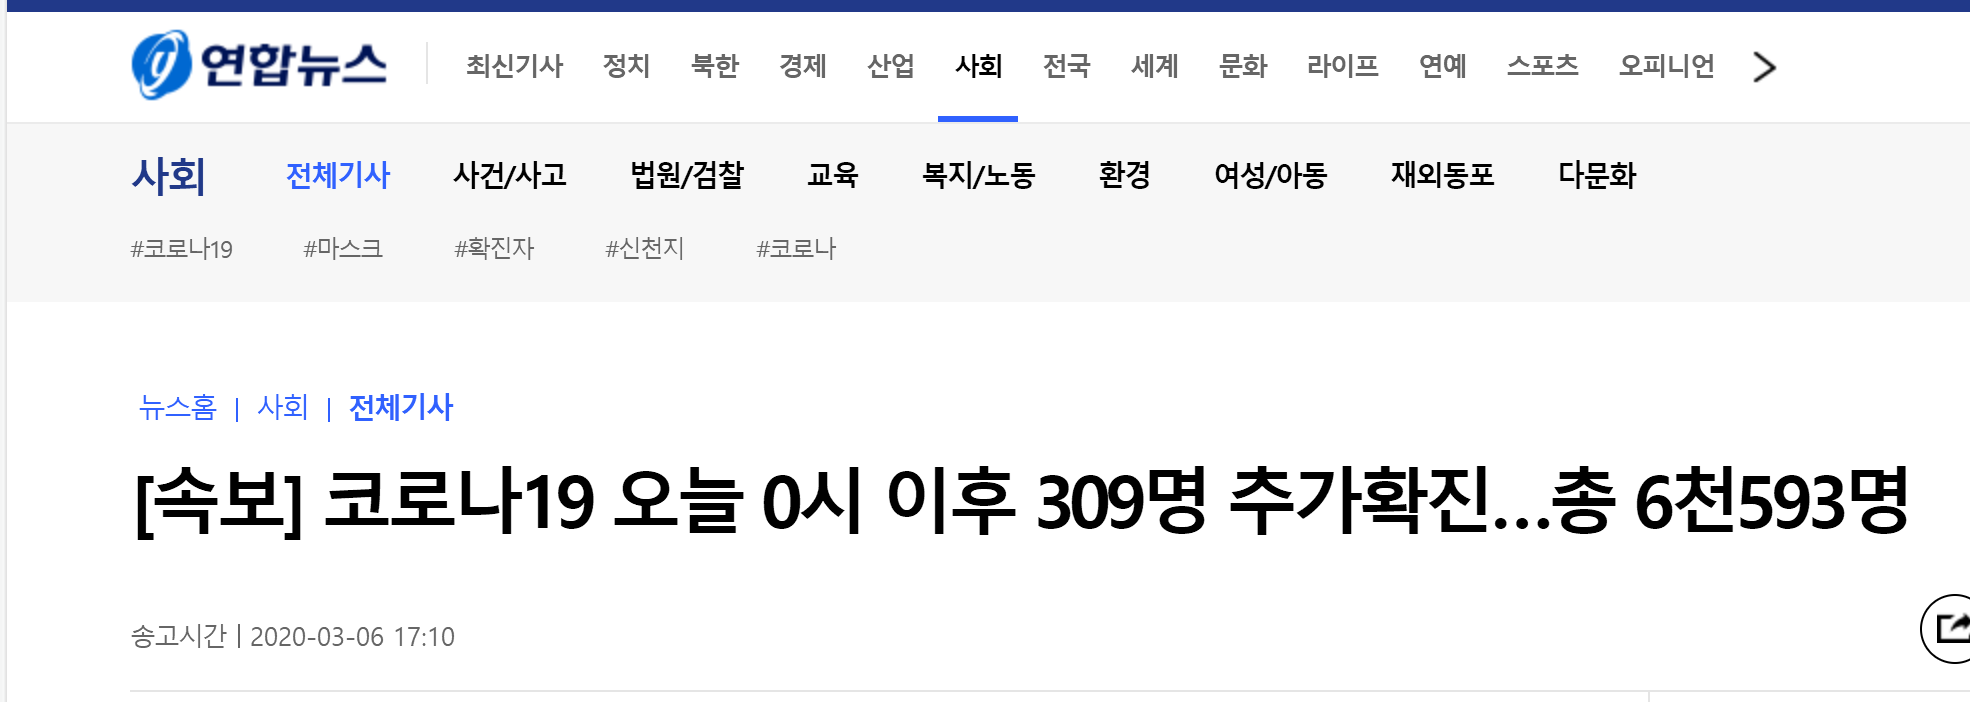 快讯！韩国新增309 例新冠肺炎确诊病例，累计确诊6593 例